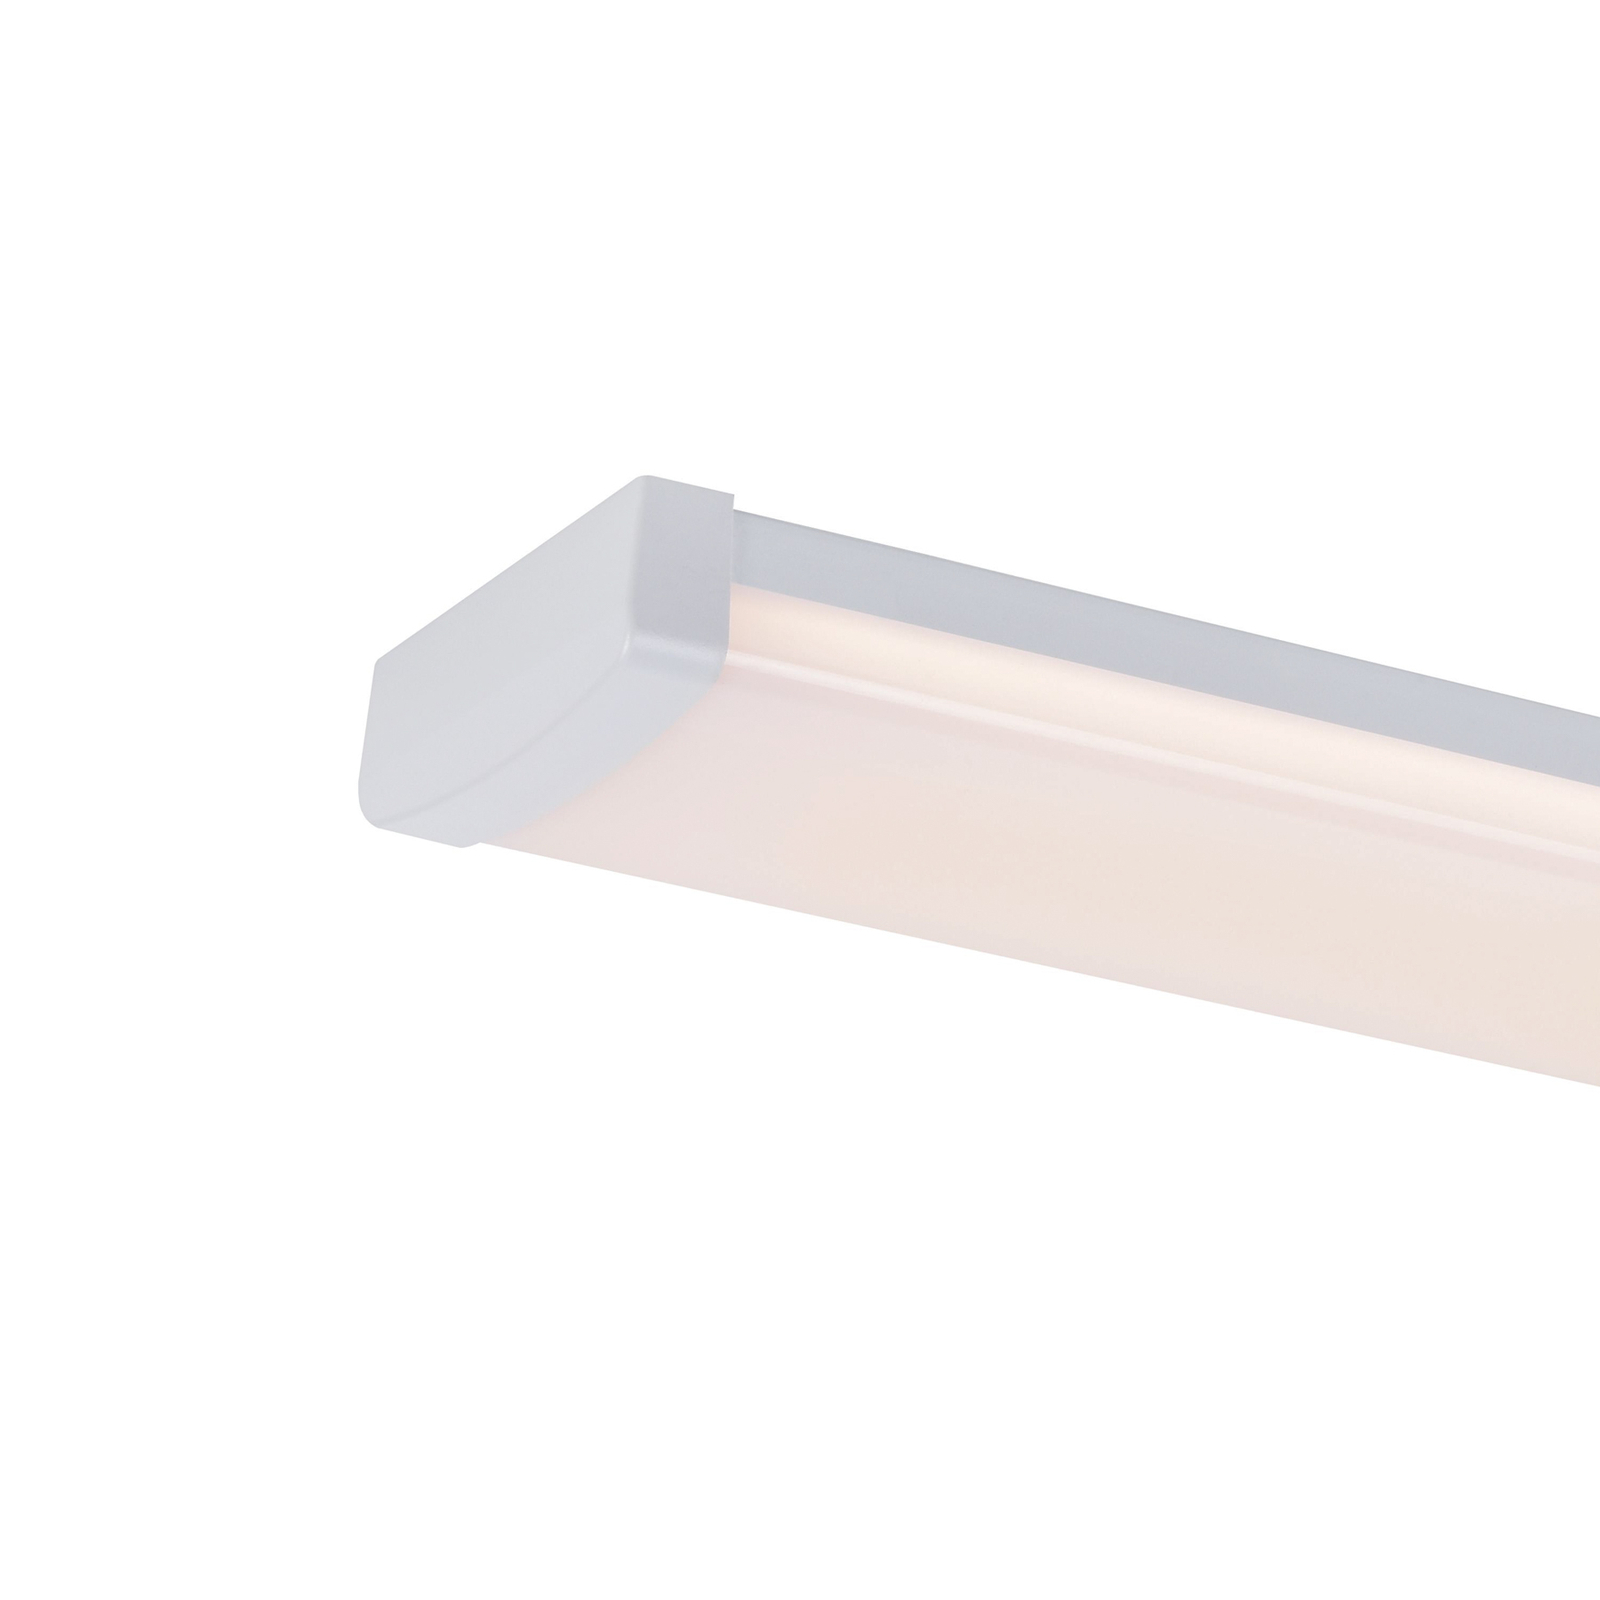 Réglette lumineuse LED Wilmington, longueur 90,5 cm, blanc, plastique